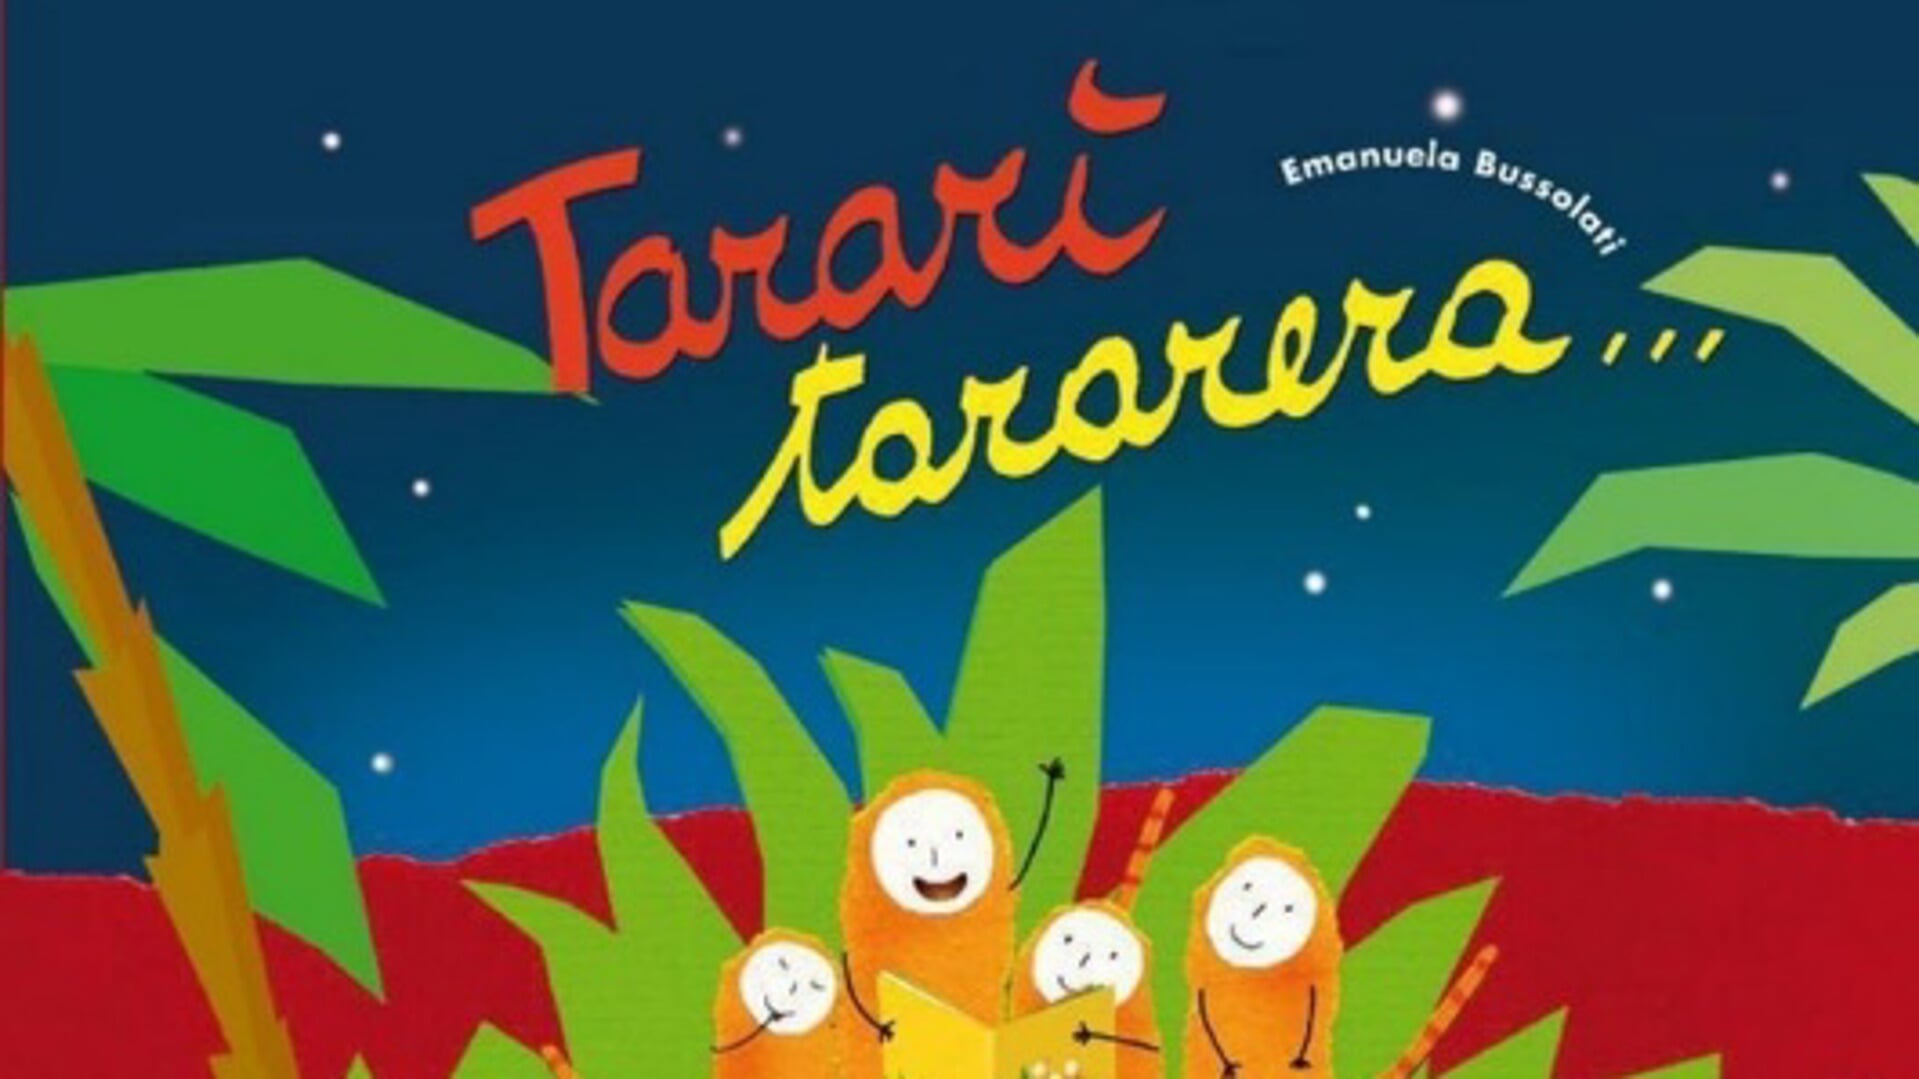 In alle vestigingen van de bieb in Hoorn wordt voorlezen uit het boek ‘Tarari Tararera’ in de fantasietaal ‘Pirupu’. 